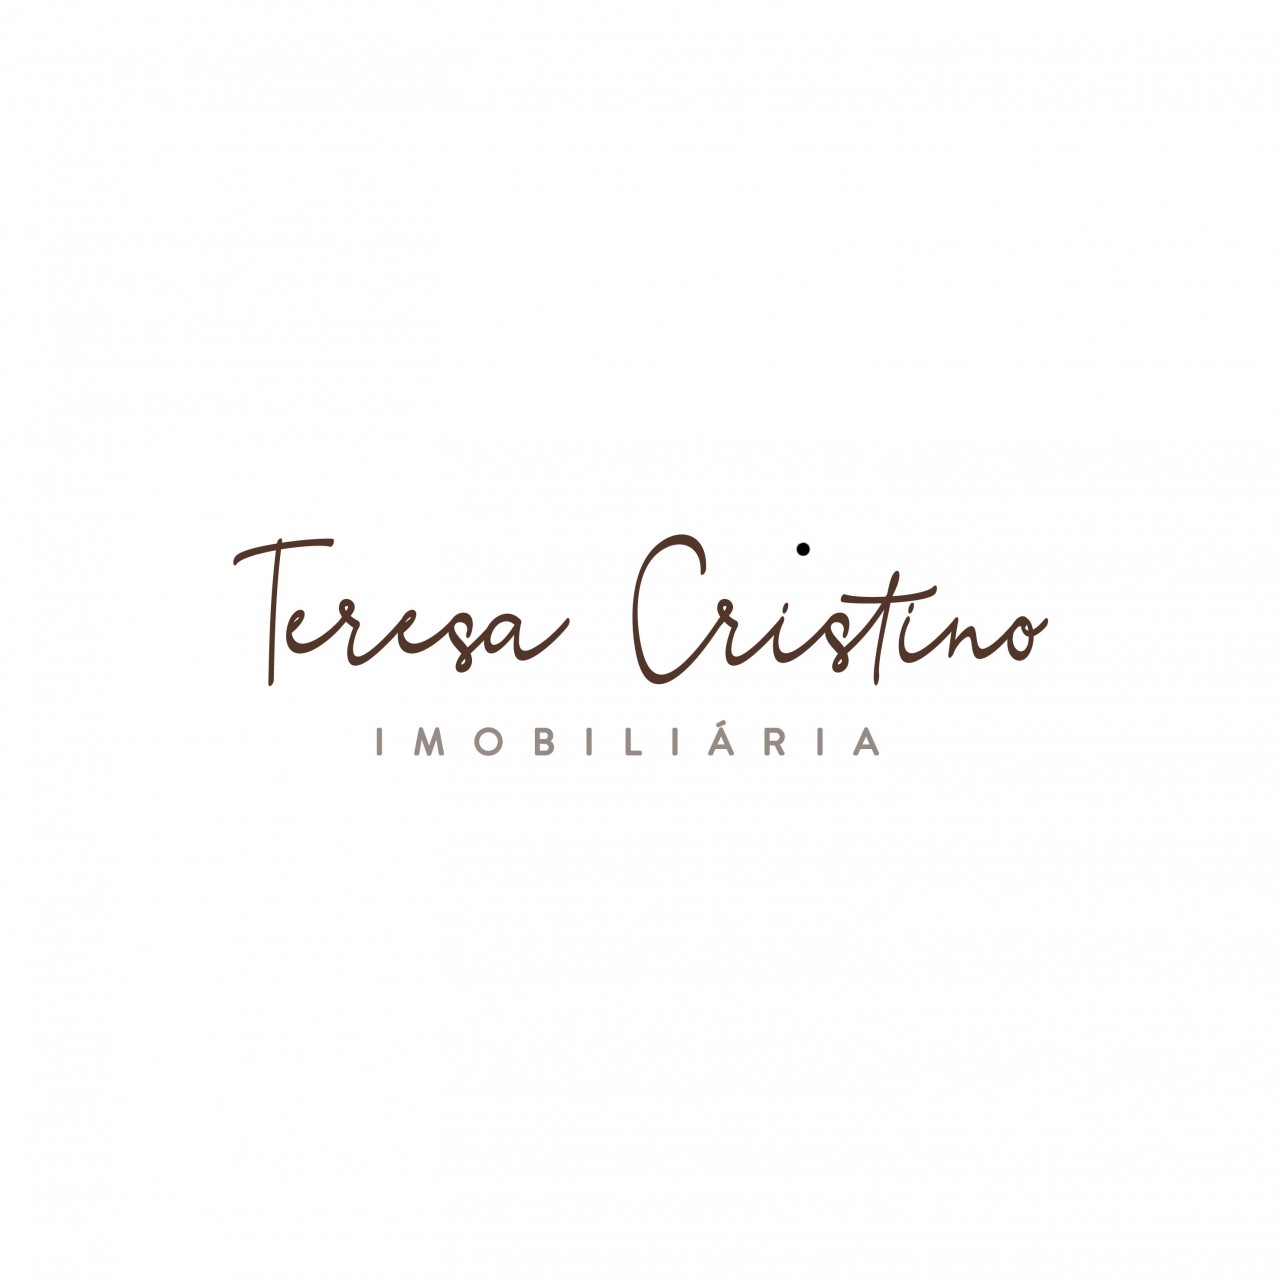 Teresa Cristino - Imobiliária